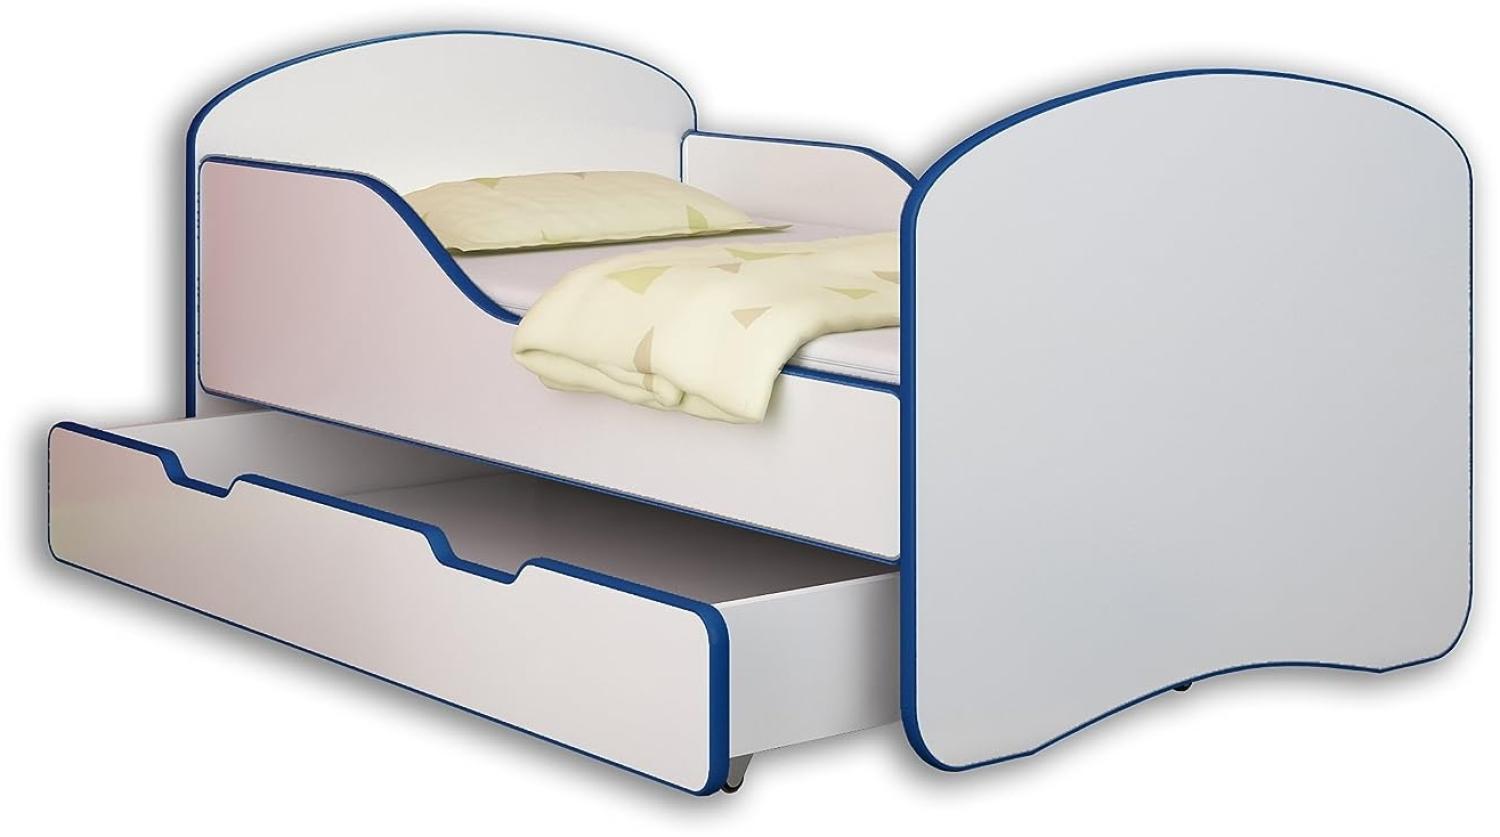 ACMA Jugendbett Kinderbett mit Einer Schublade und Matratze Weiß I 140 160 180 (180x80 cm + Drawer, Blau) Bild 1